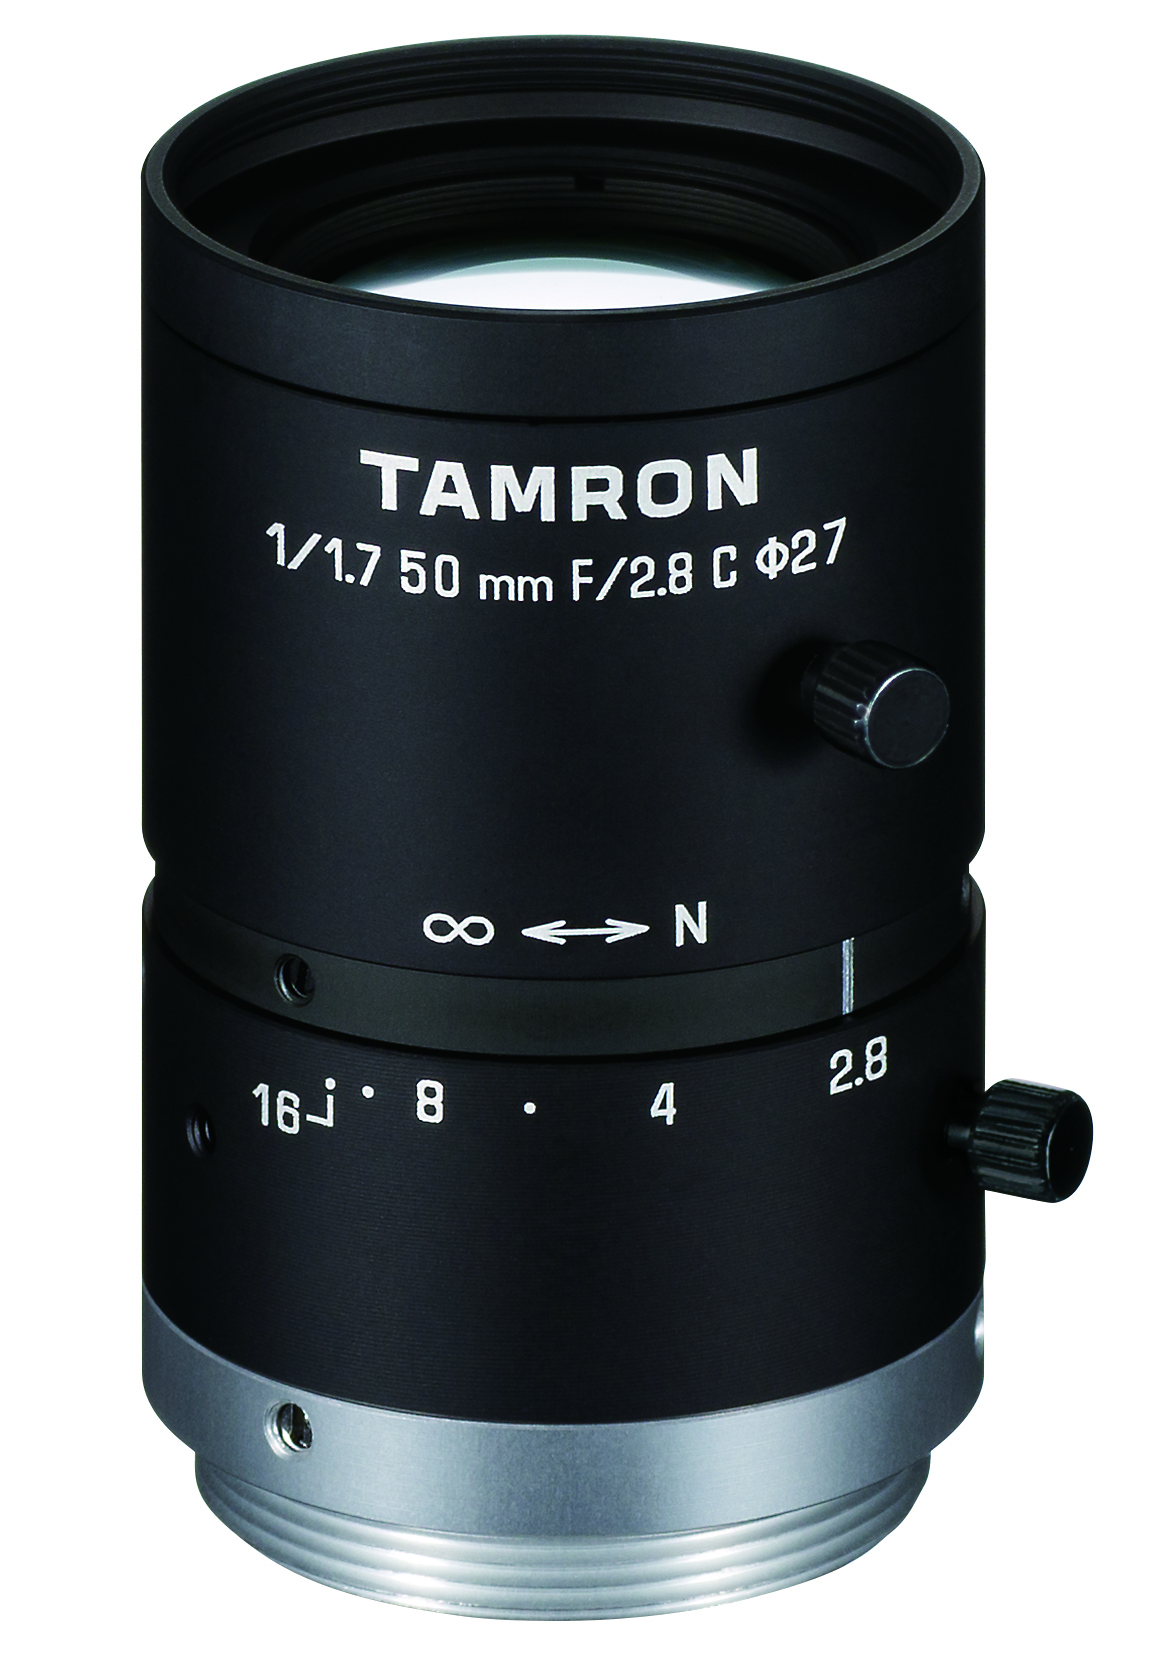 lens: Model M117FM50